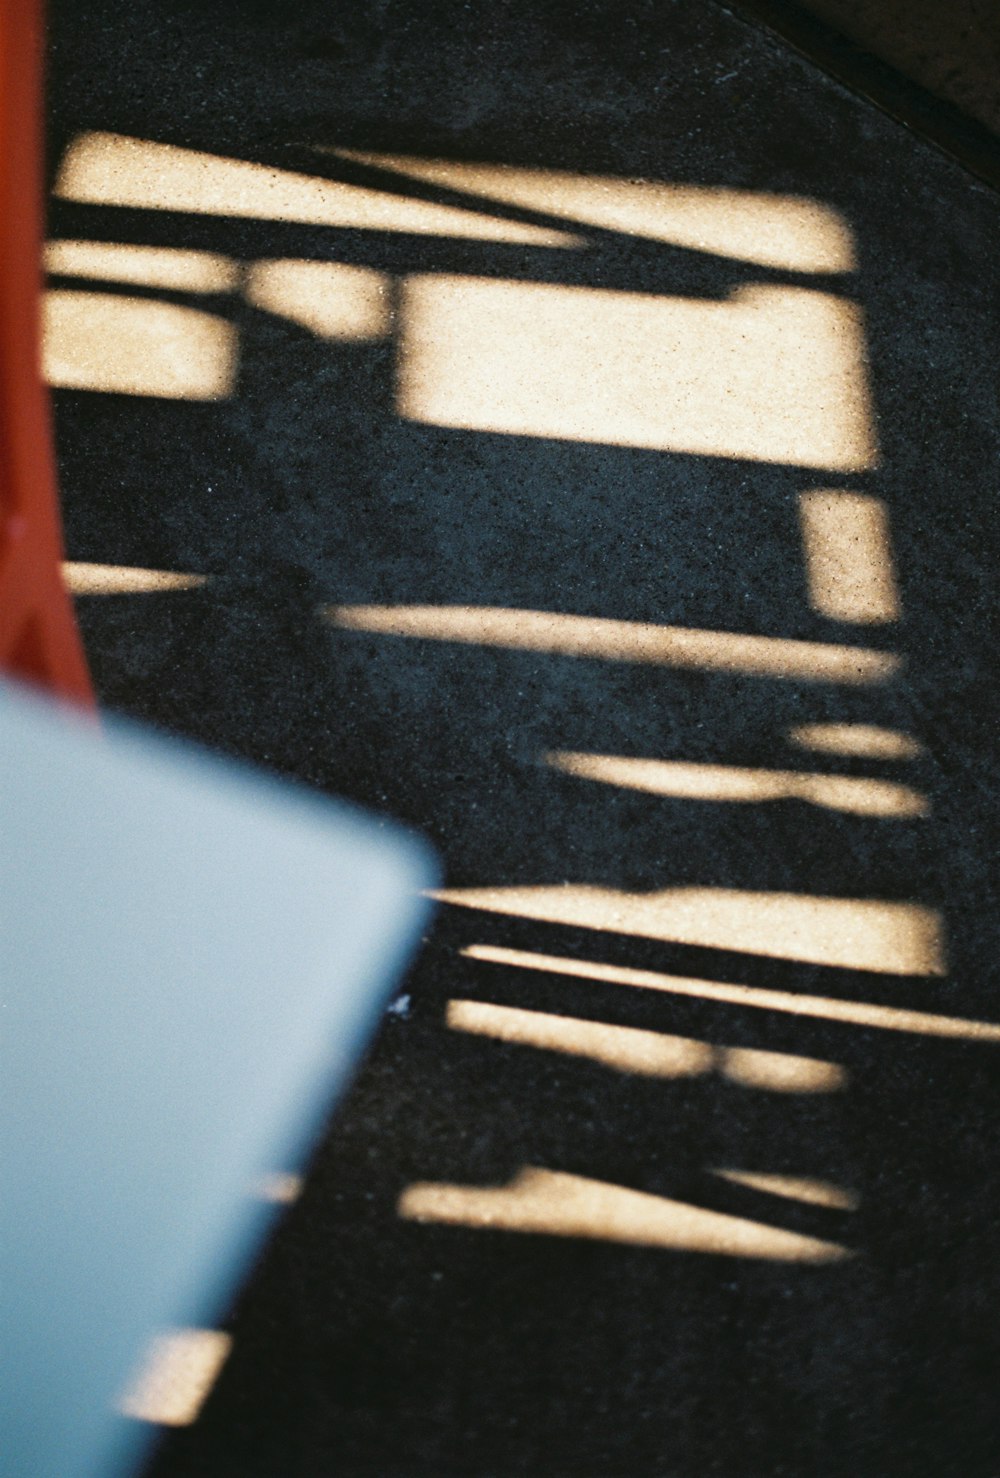 a sombra de um banco no chão